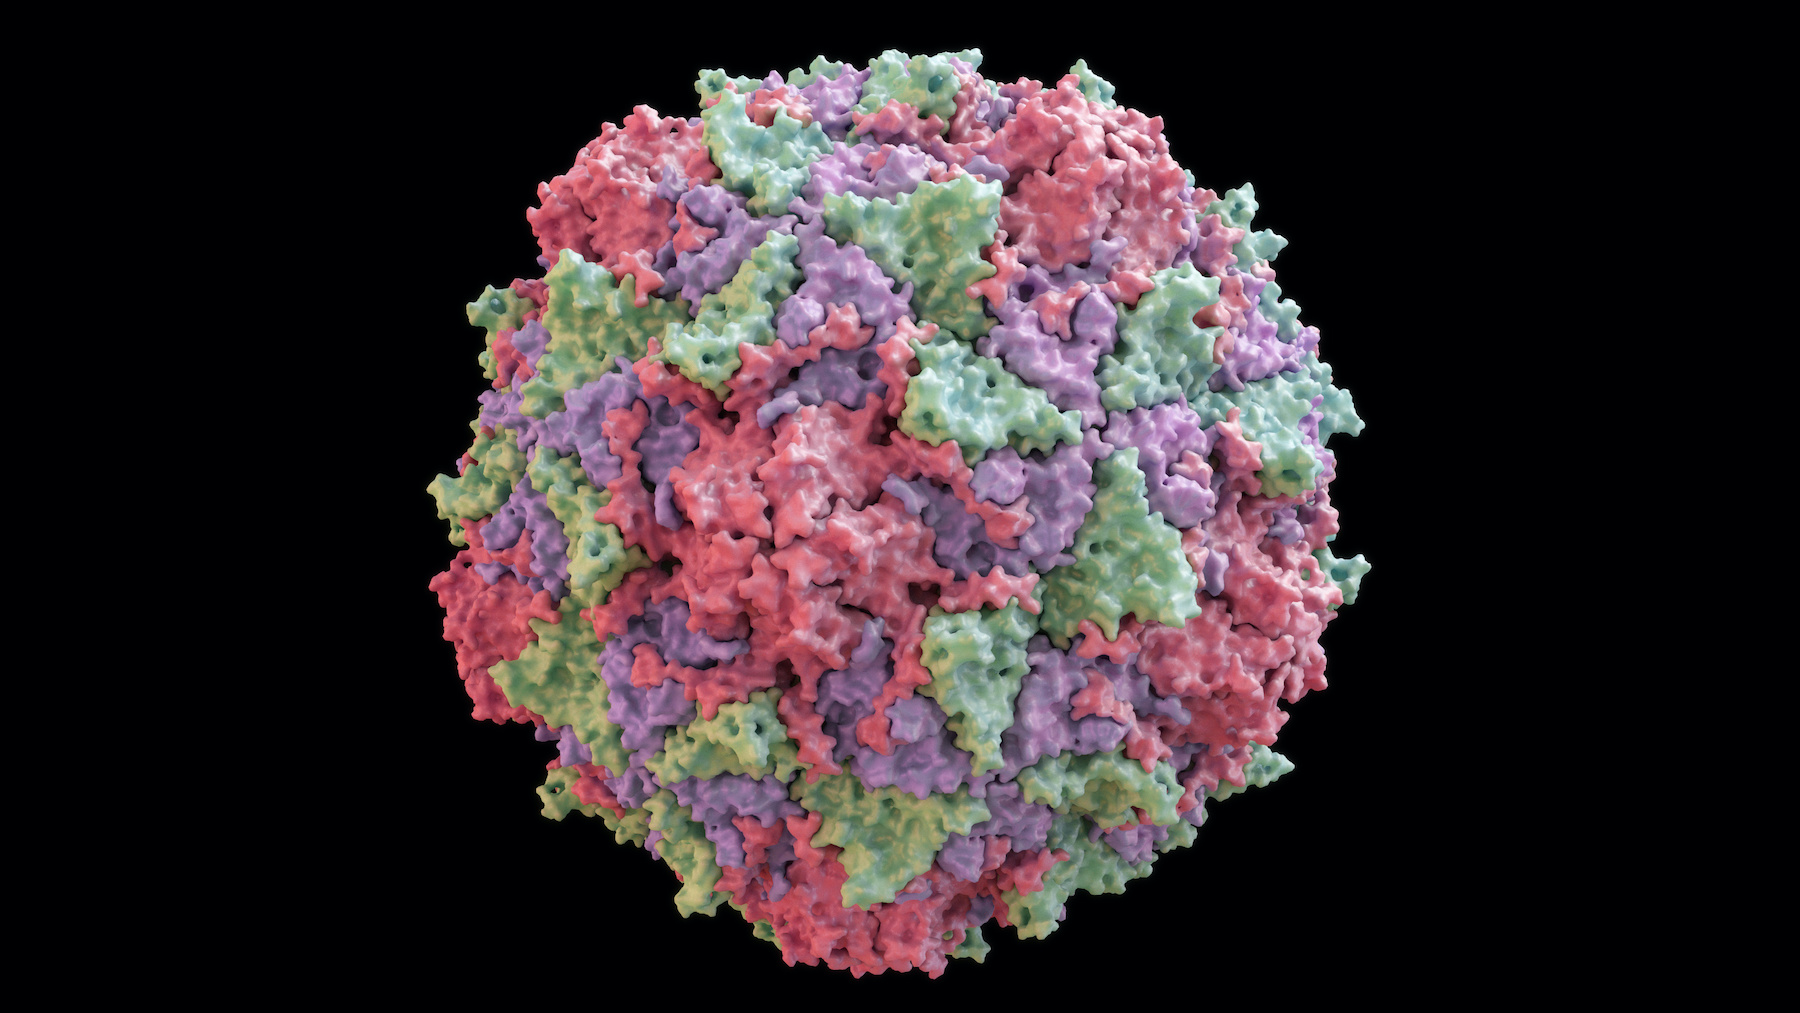 Les entérovirus, comme le virus de la polio, deviennent plus résistants aux désinfectants lorsqu’ils s’habituent à l’eau chaude. © Yabusaka, Adobe Stock